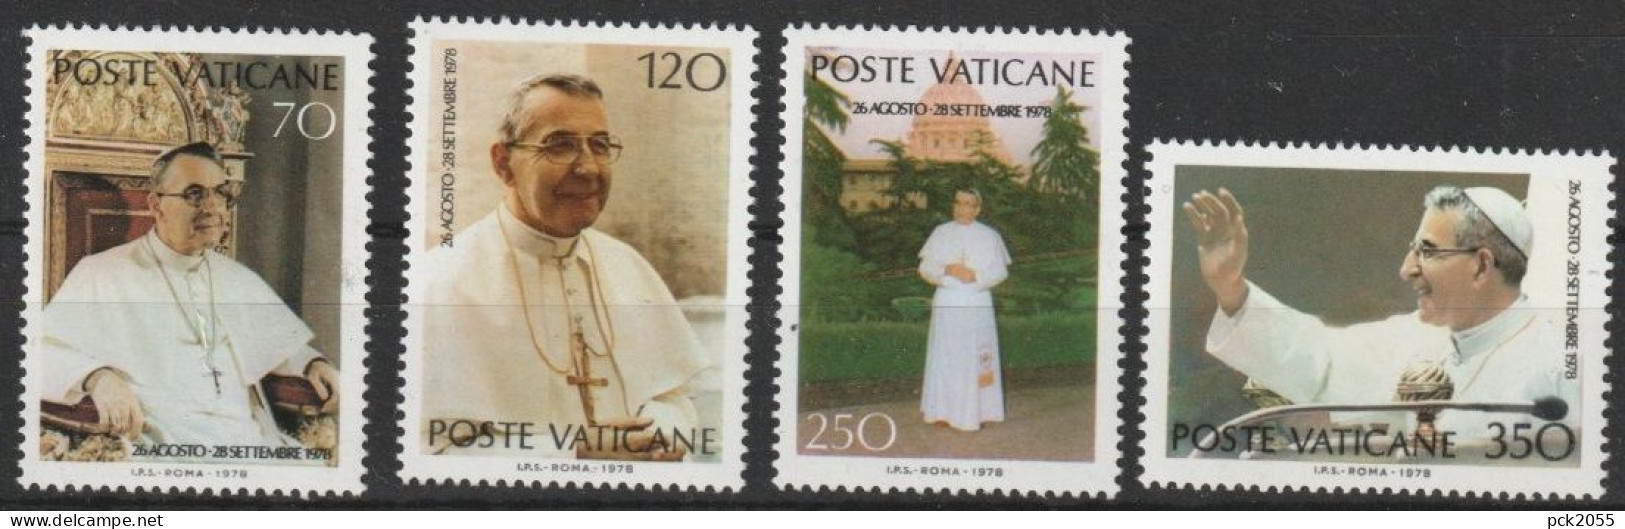 Vatikan 1978 Mi-Nr.732 - 735 ** Postfrisch. Papst Johannes Paul I.  ( B 2870 ))günstige Versandkosten - Neufs